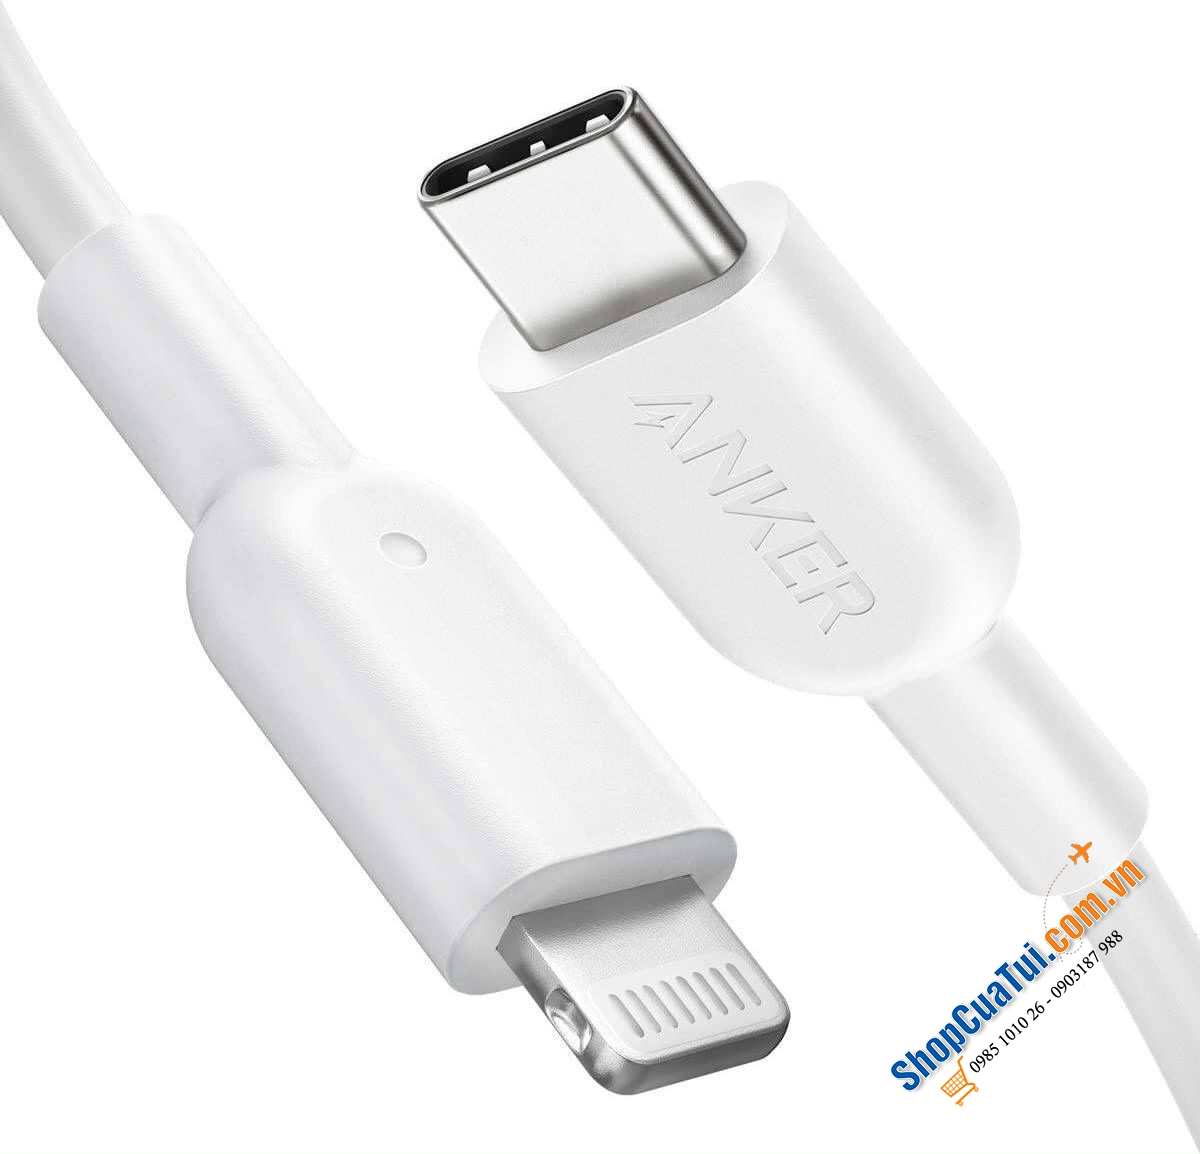 Cáp sạc Iphone Anker USB C to Lightning 1,8m